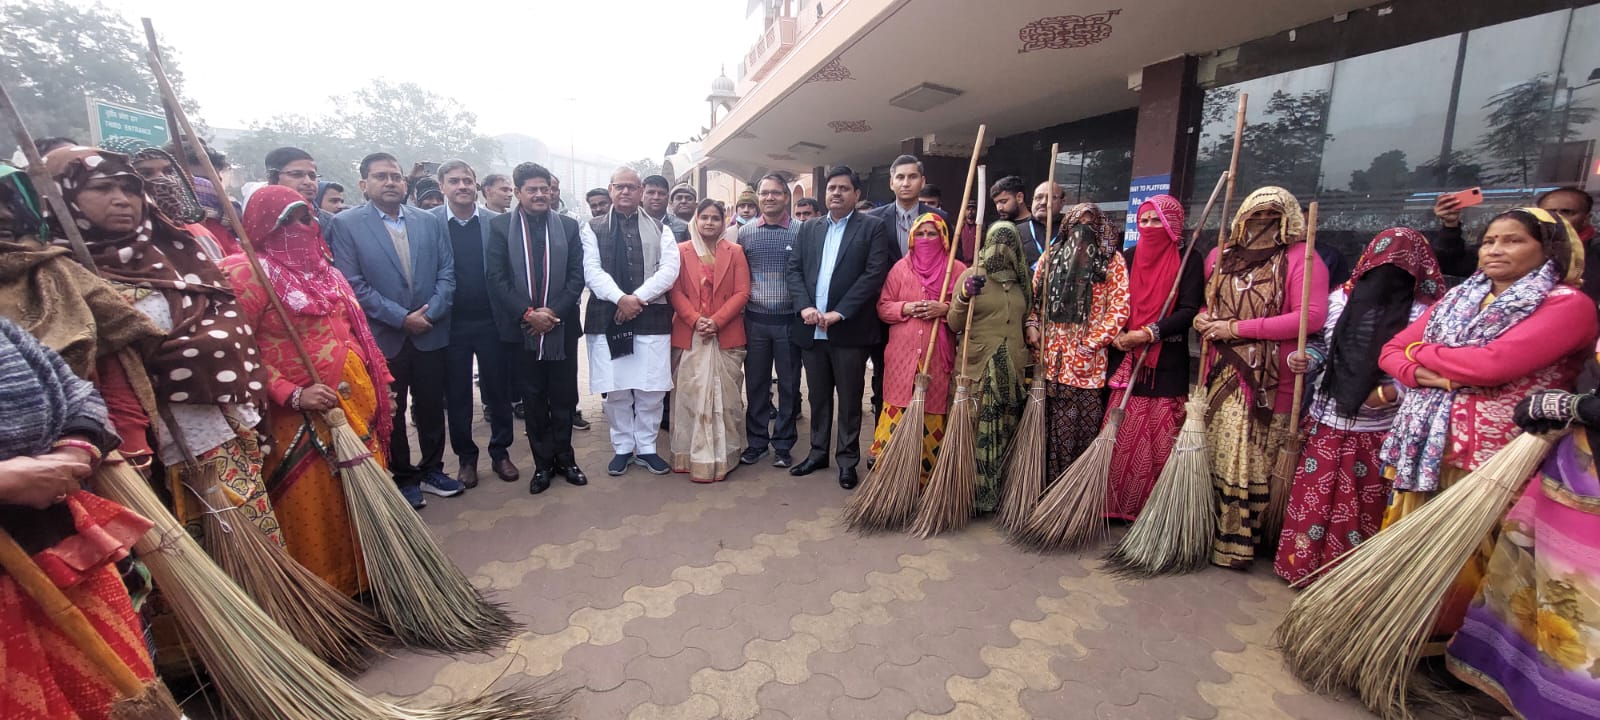 जयपुर जंक्शन पर सांसद, विधायक, महापौर नें किया स्वच्छता पखवाड़े के तहत श्रमदान